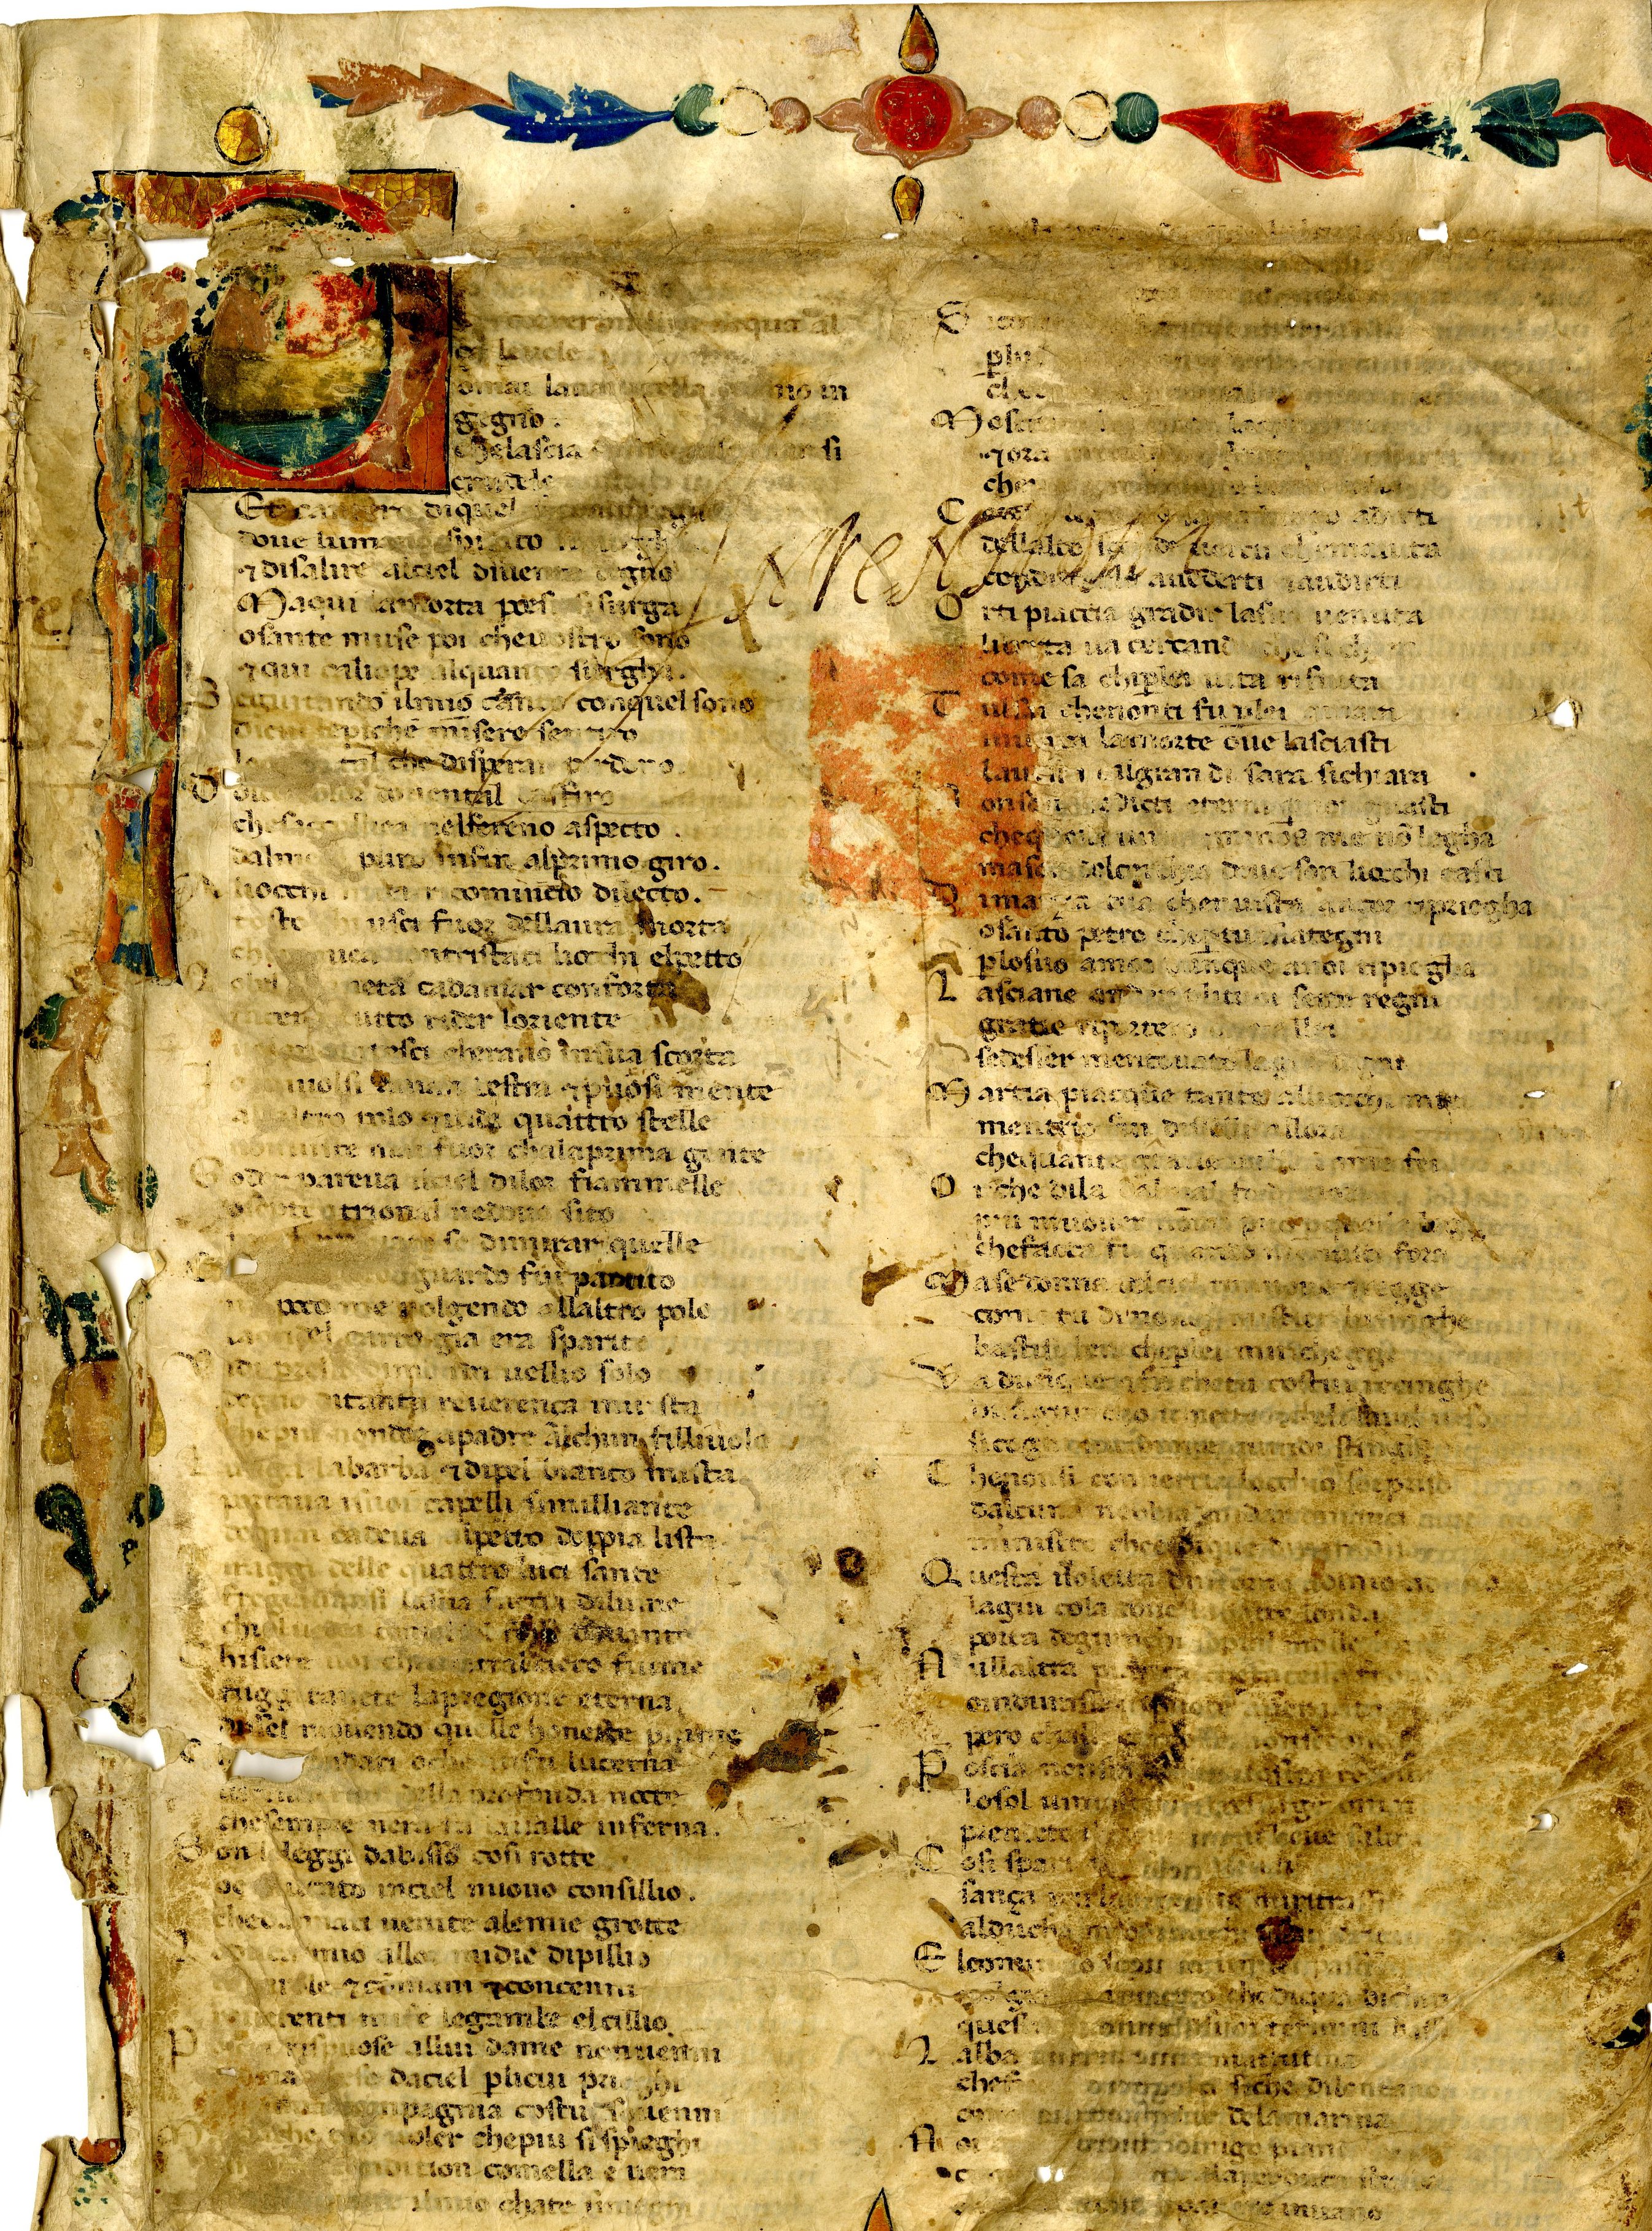 si tratta di frammenti della Divina Commedia di Dante Alighieri in cui compaiono alcuni canti dell'Inferno e del Purgatorio) venne ritrovato nell'archivio del Comune di Forlì.